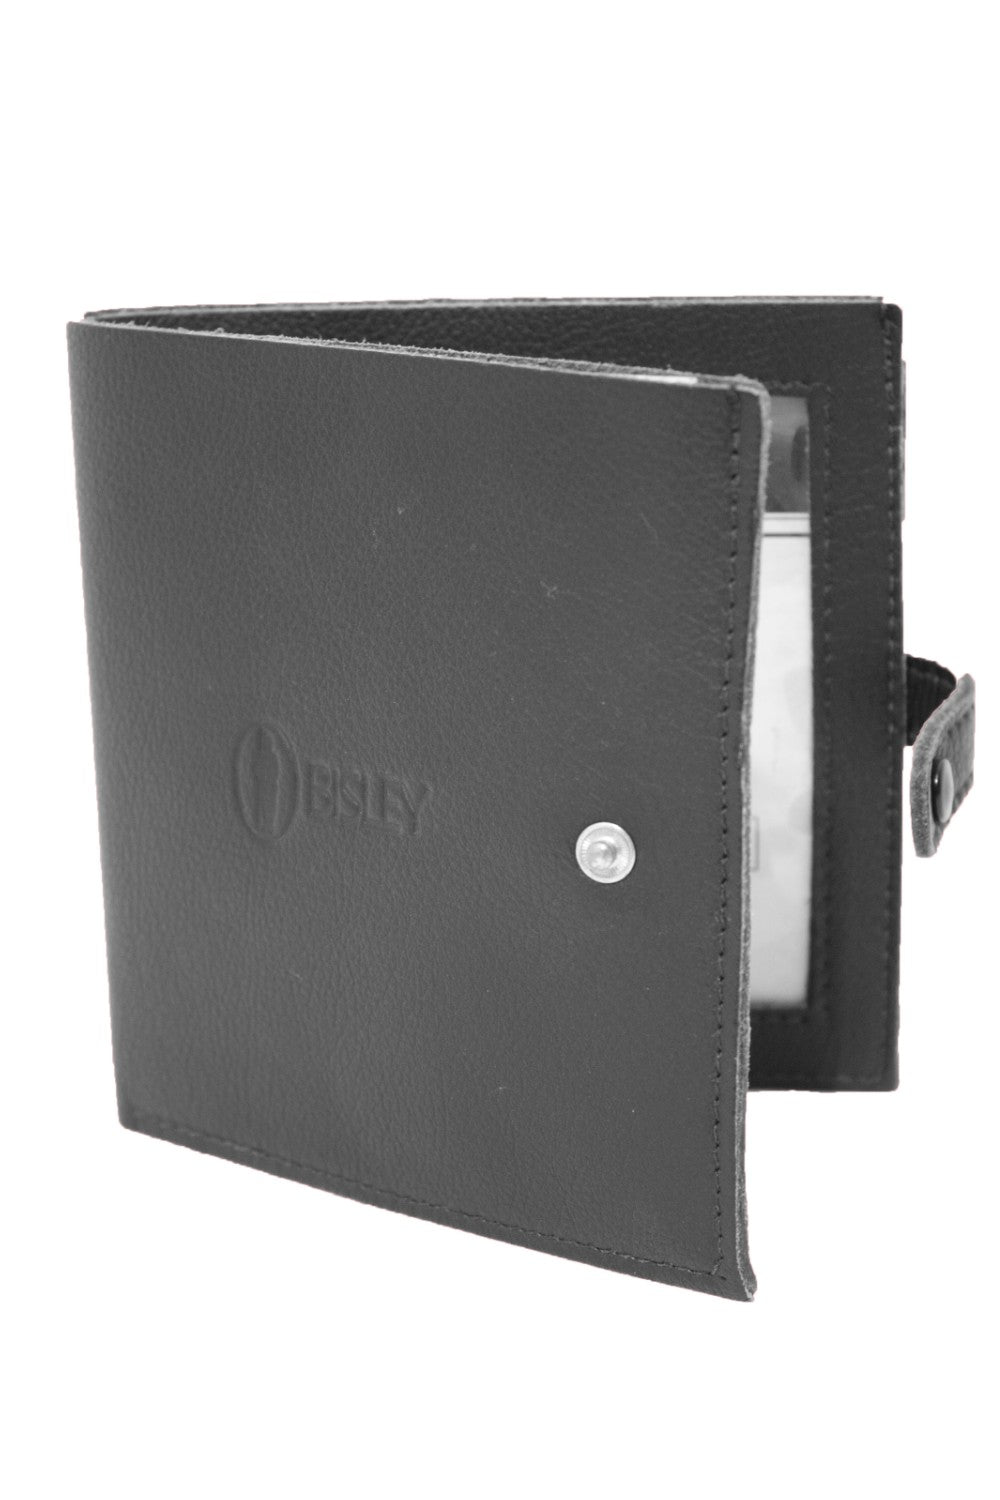 Bisley Shotgun Certificate Wallet (Open)